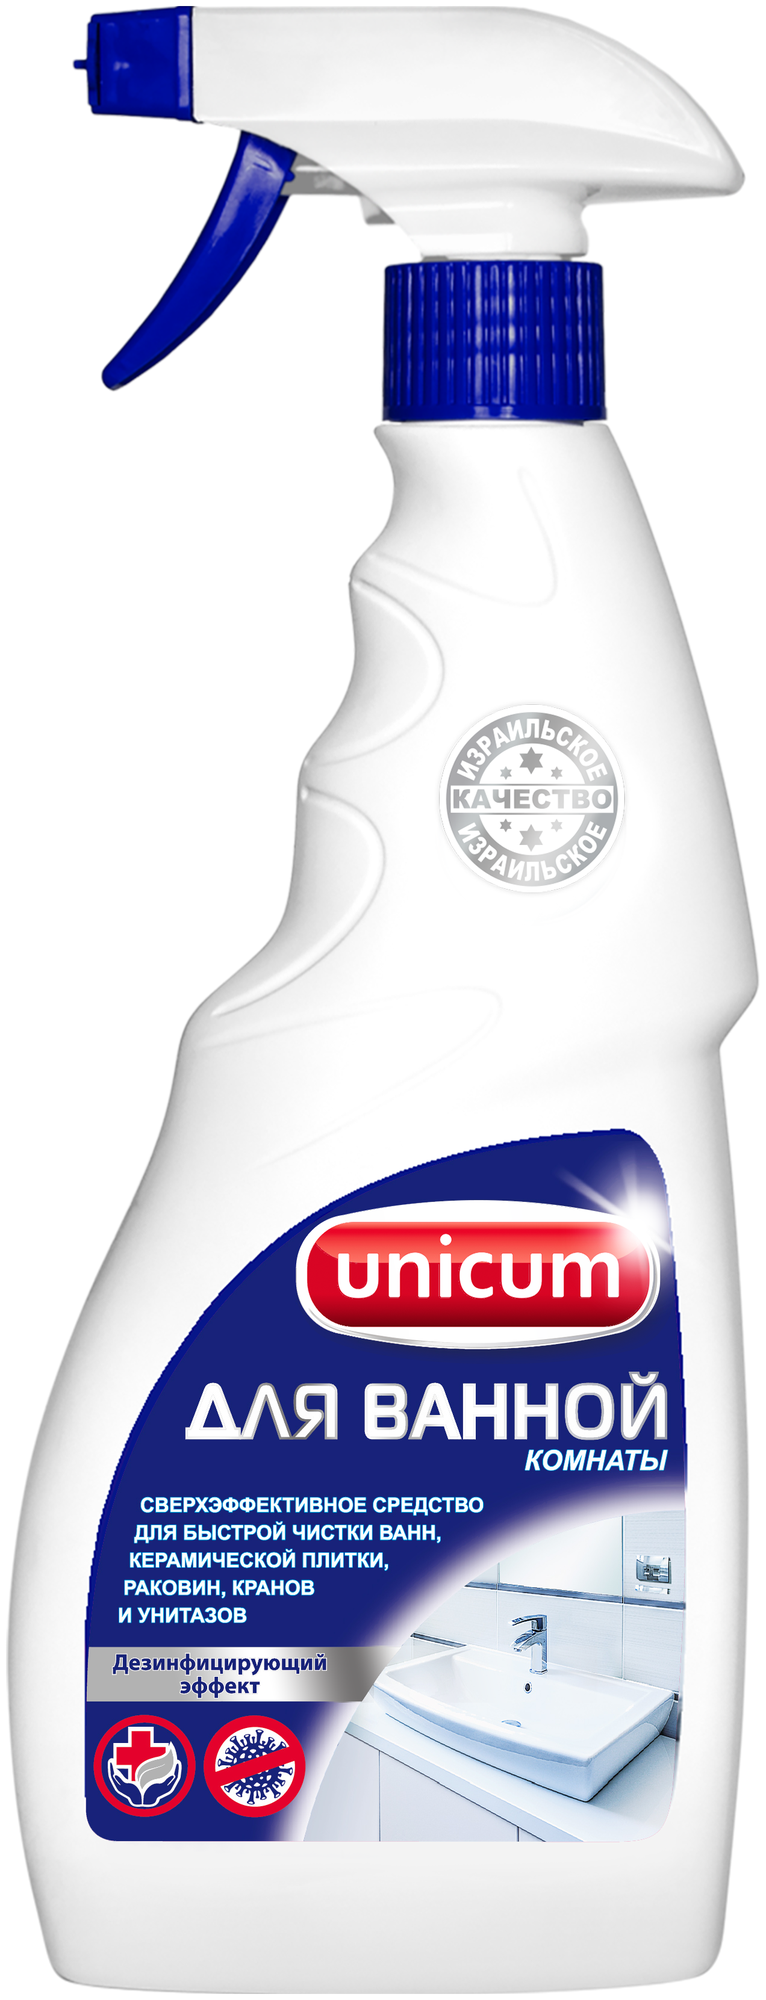 Unicum спрей для чистки ванной комнаты